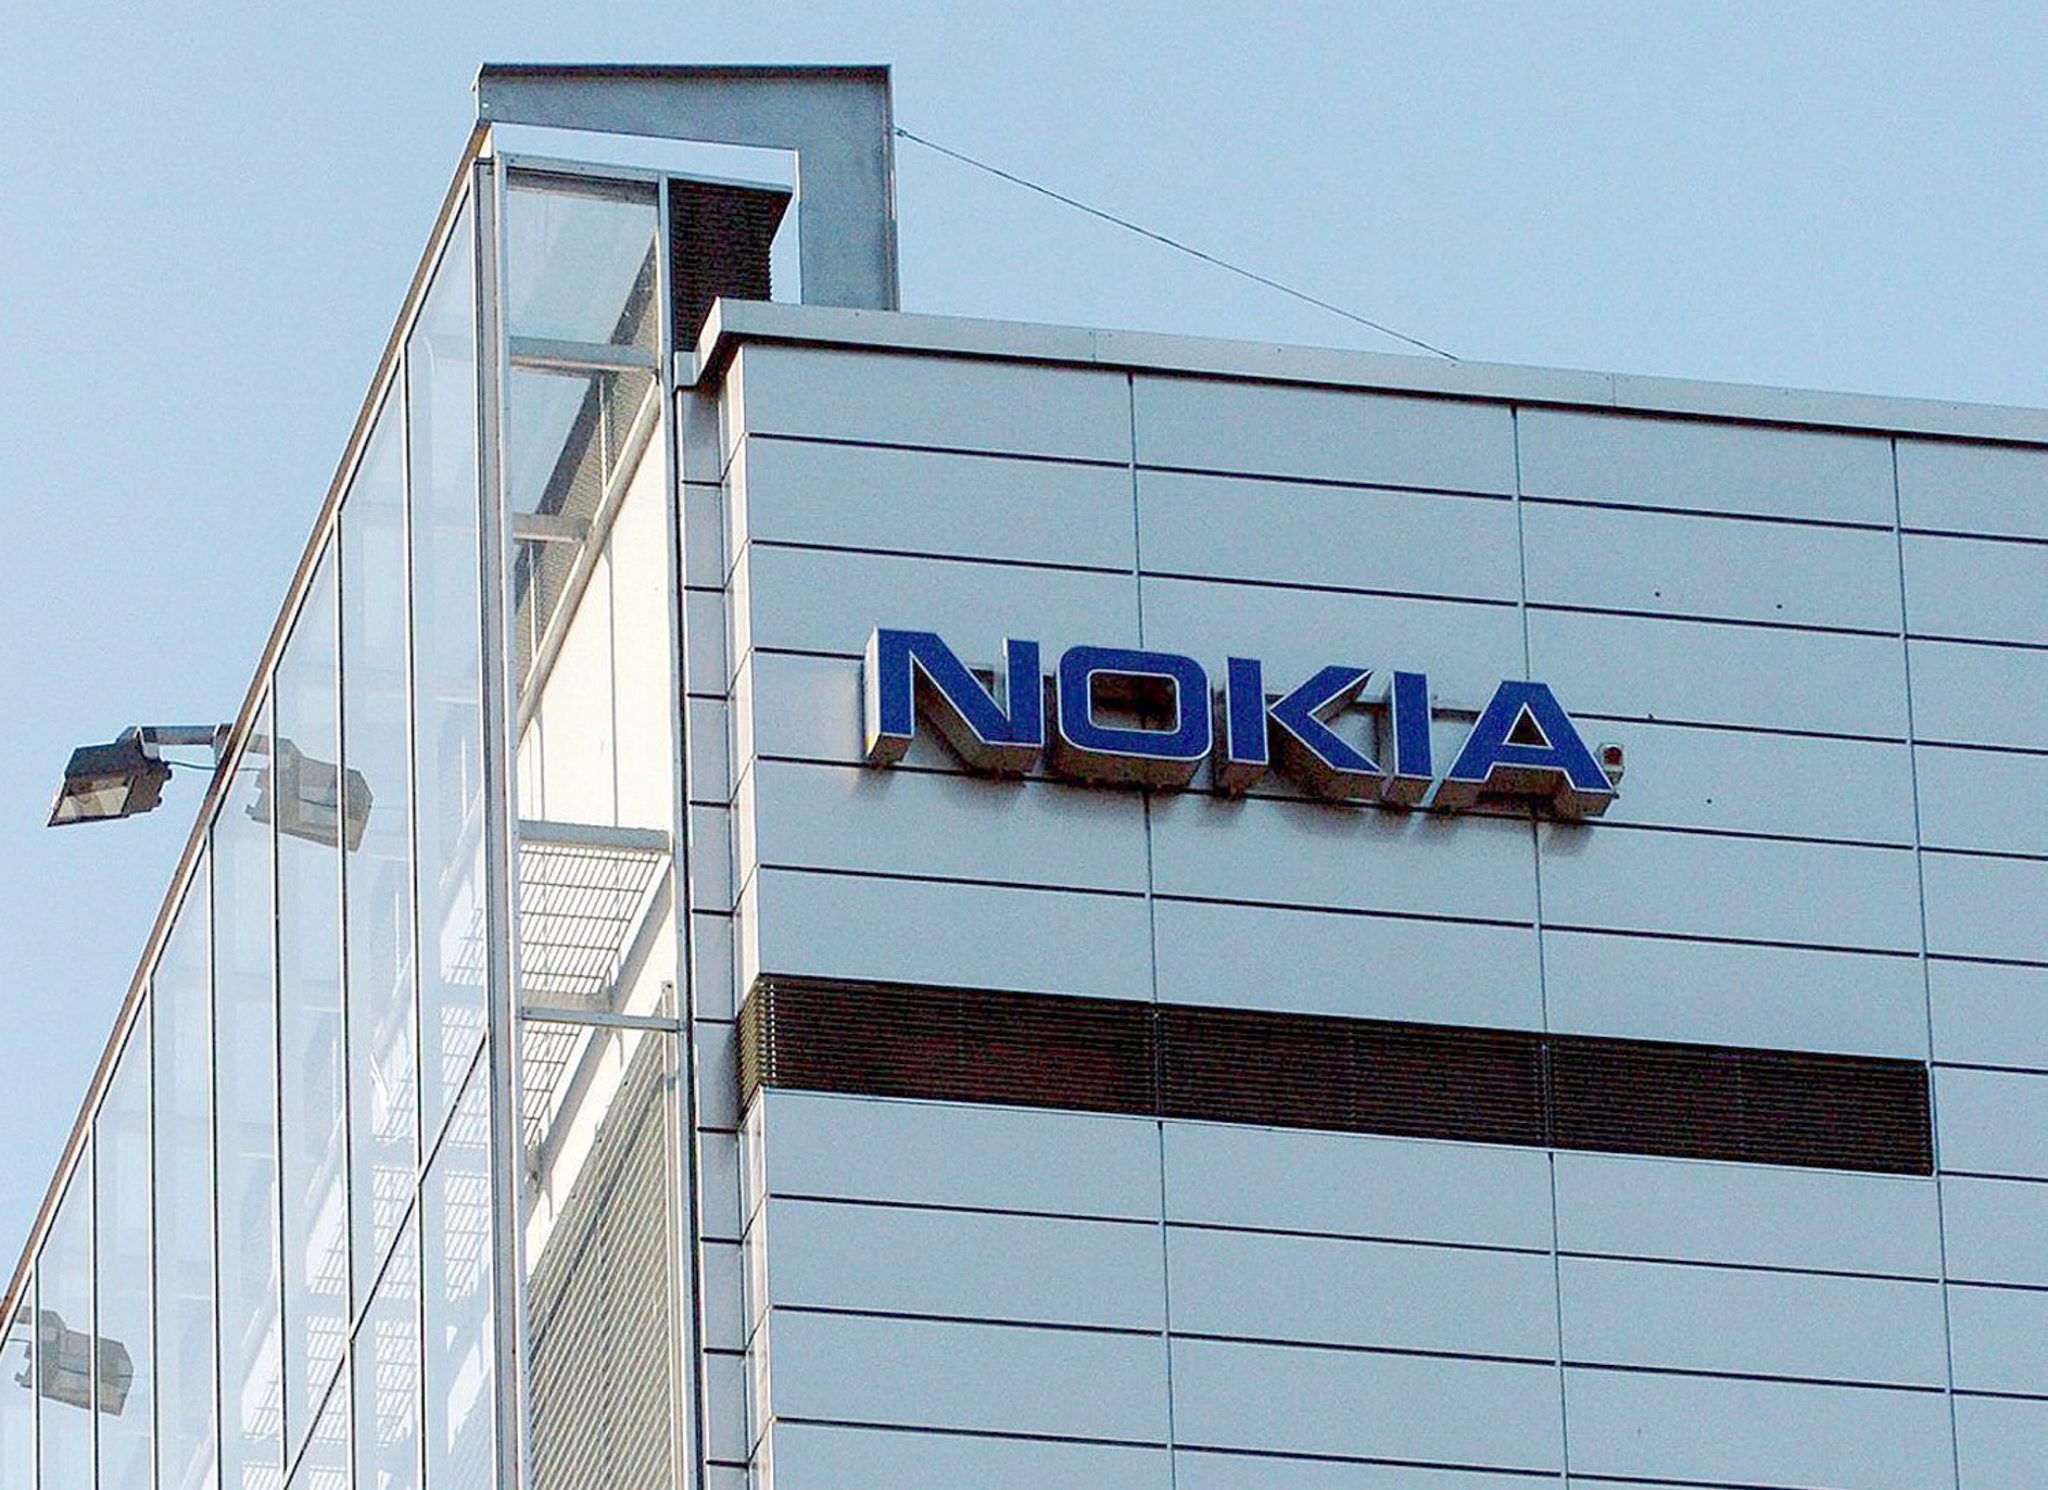 Het Finse Nokia heeft in het vierde kwartaal weer zwarte cijfers geschreven. Het bedrijf profiteerde vooral van de groeiende vraag naar betere mobiele netwerken, dat sinds de verkoop van de mobieltjesdivisie de voornaamste activiteit van Nokia is. Dat bleek donderdag bij de presentatie van de jaarcijfers. De winst in het vierde kwartaal kwam uit op 443 miljoen euro. Een jaar eerder resteerde er onder de streep een verlies van 26 miljoen euro. Nokia heeft de afgelopen periode een flinke reorganisatie doorgevoerd. Daardoor is de winstgevendheid vergroot. Het vierde kwartaal was goed voor een omzetstijging van 8 procent tot 3,4 miljard euro. De totale jaaromzet van Nokia kwam uit op 12,7 miljard euro, een fractie meer dan een jaar eerder. Bij de belangrijkste tak netwerken daalde de omzet 1 procent tot 11,2 miljard euro. Ook bij de patenten- en kaartendivisie boekte het bedrijf betere resultaten. De operationele winst was met 170 miljoen euro wel beduidend lager dan de 518 miljoen die overbleef na 2013.